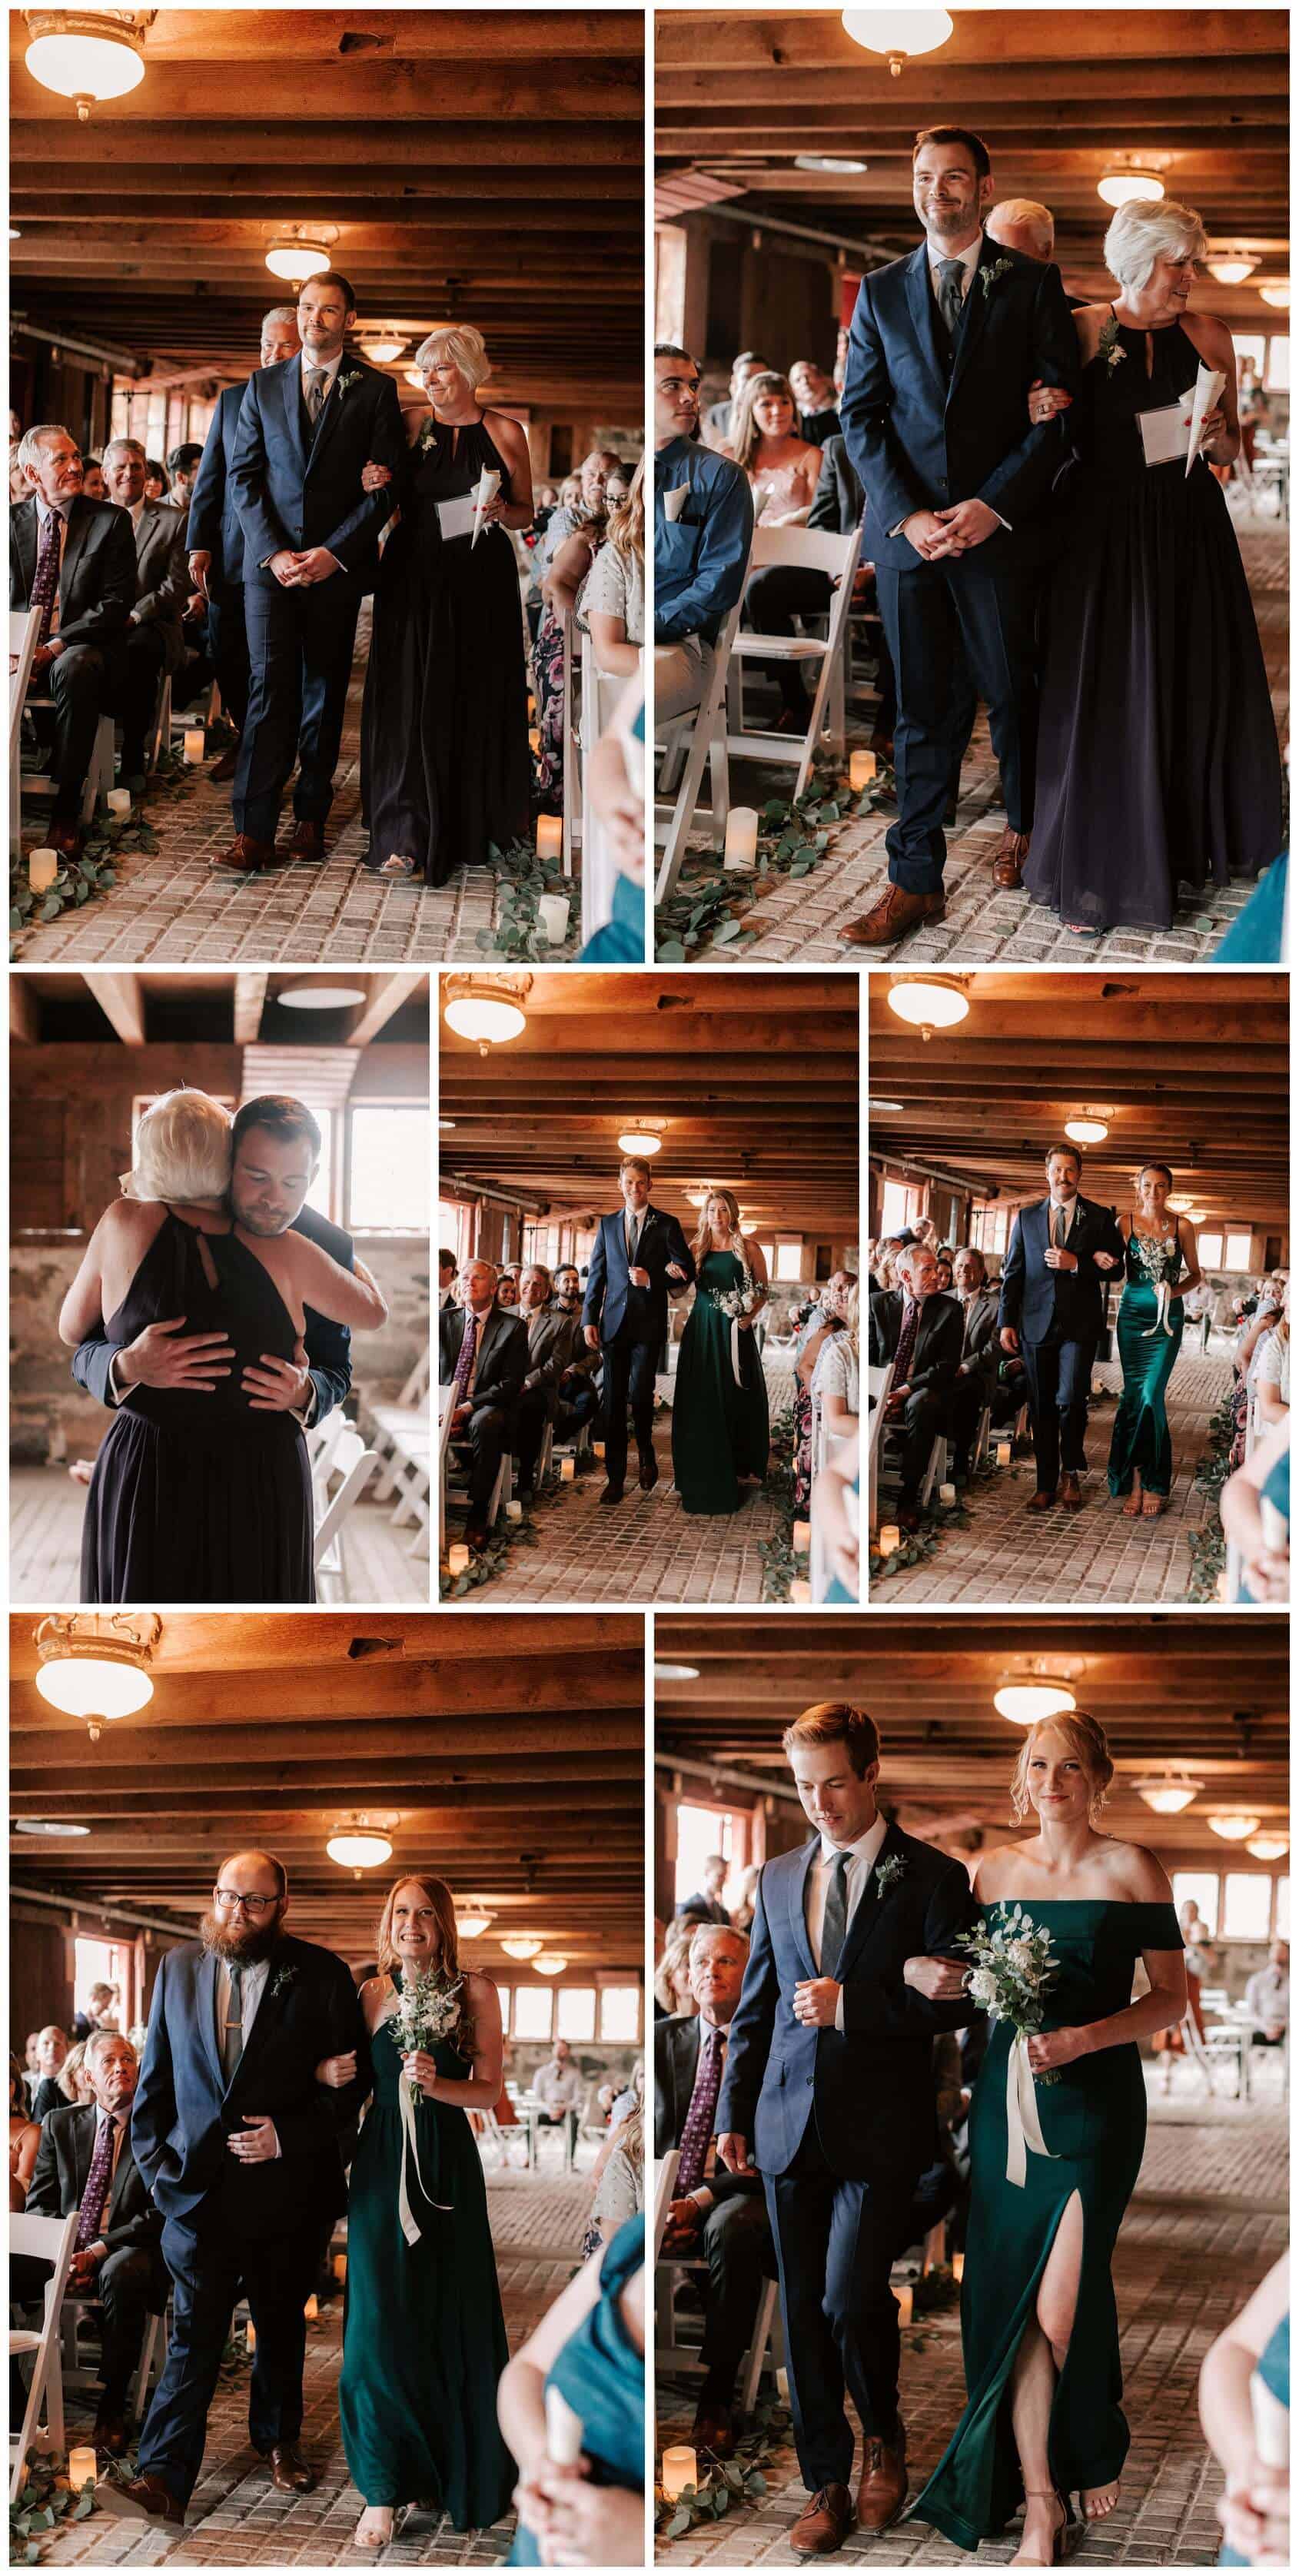 Crockett Farm wedding ceremony photos by Luma Weddings